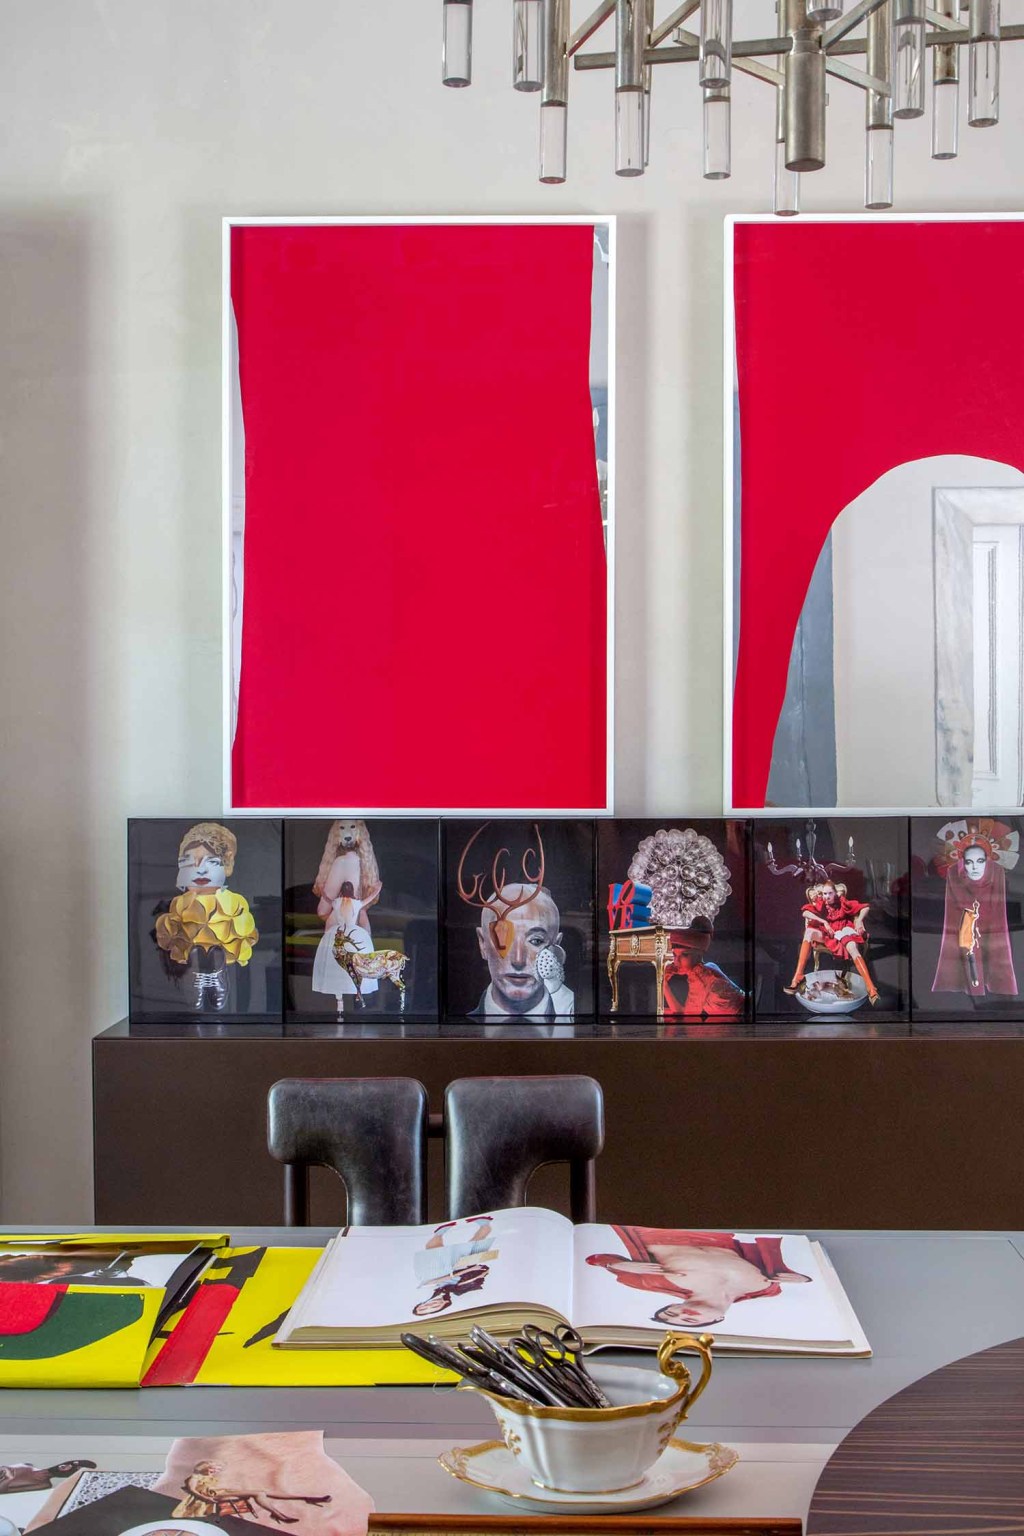 161103 GISELE TARANTO-01_quadros vermelhos de Carlito Carvalhosa_Galeria Nara Roesler_ Assemblage Ana Laet